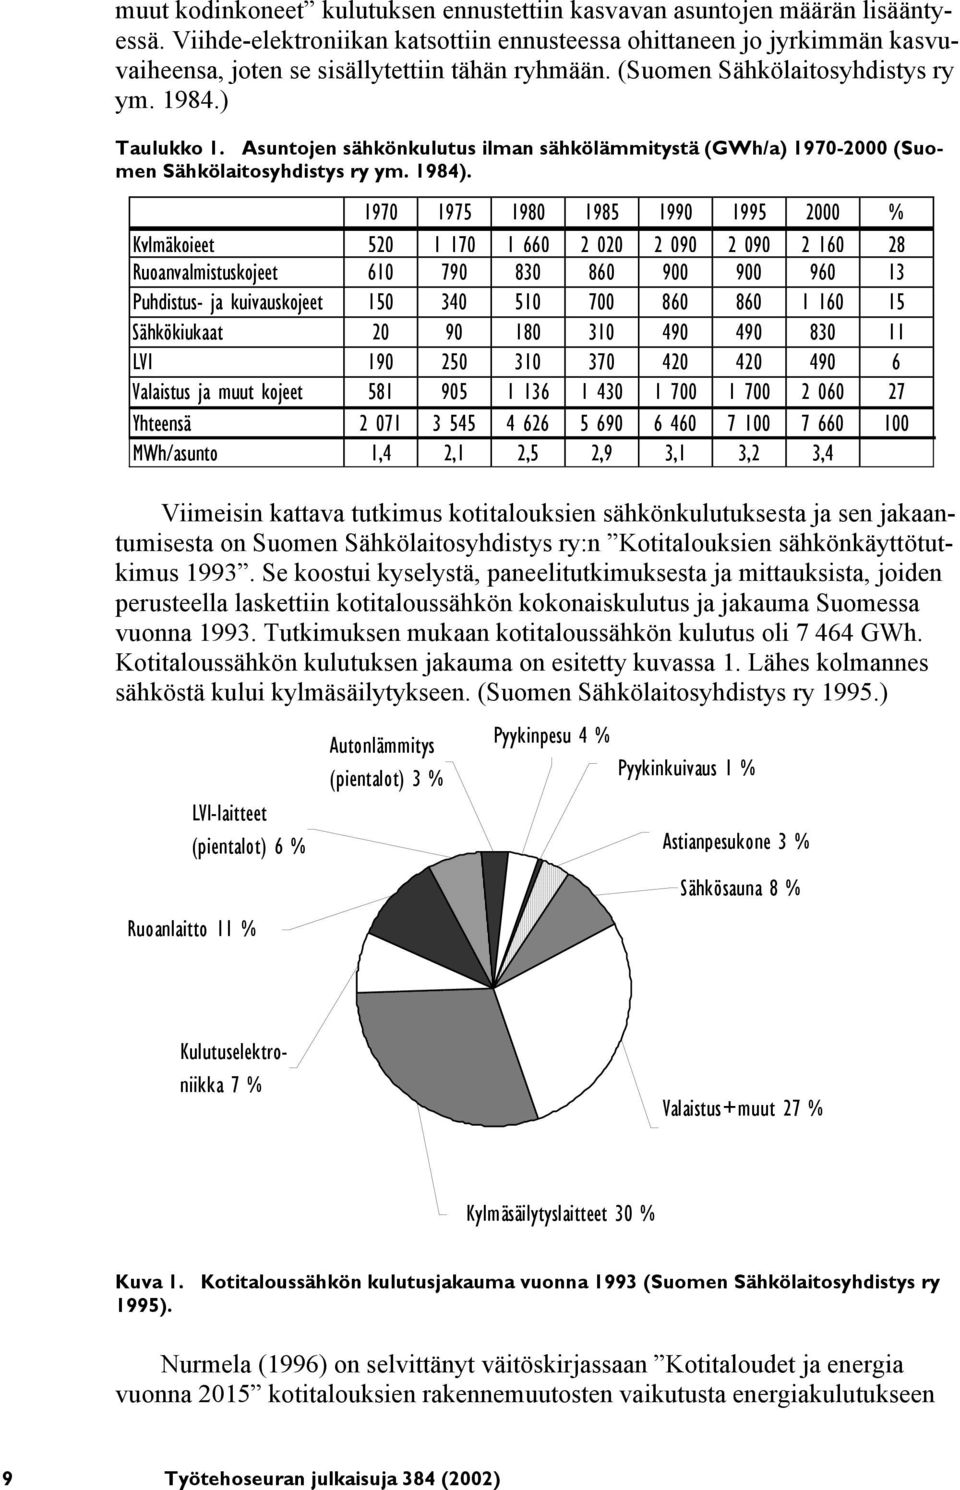 Asuntojen sähkönkulutus ilman sähkölämmitystä (GWh/a) 1970-2000 (Suomen Sähkölaitosyhdistys ry ym. 1984).